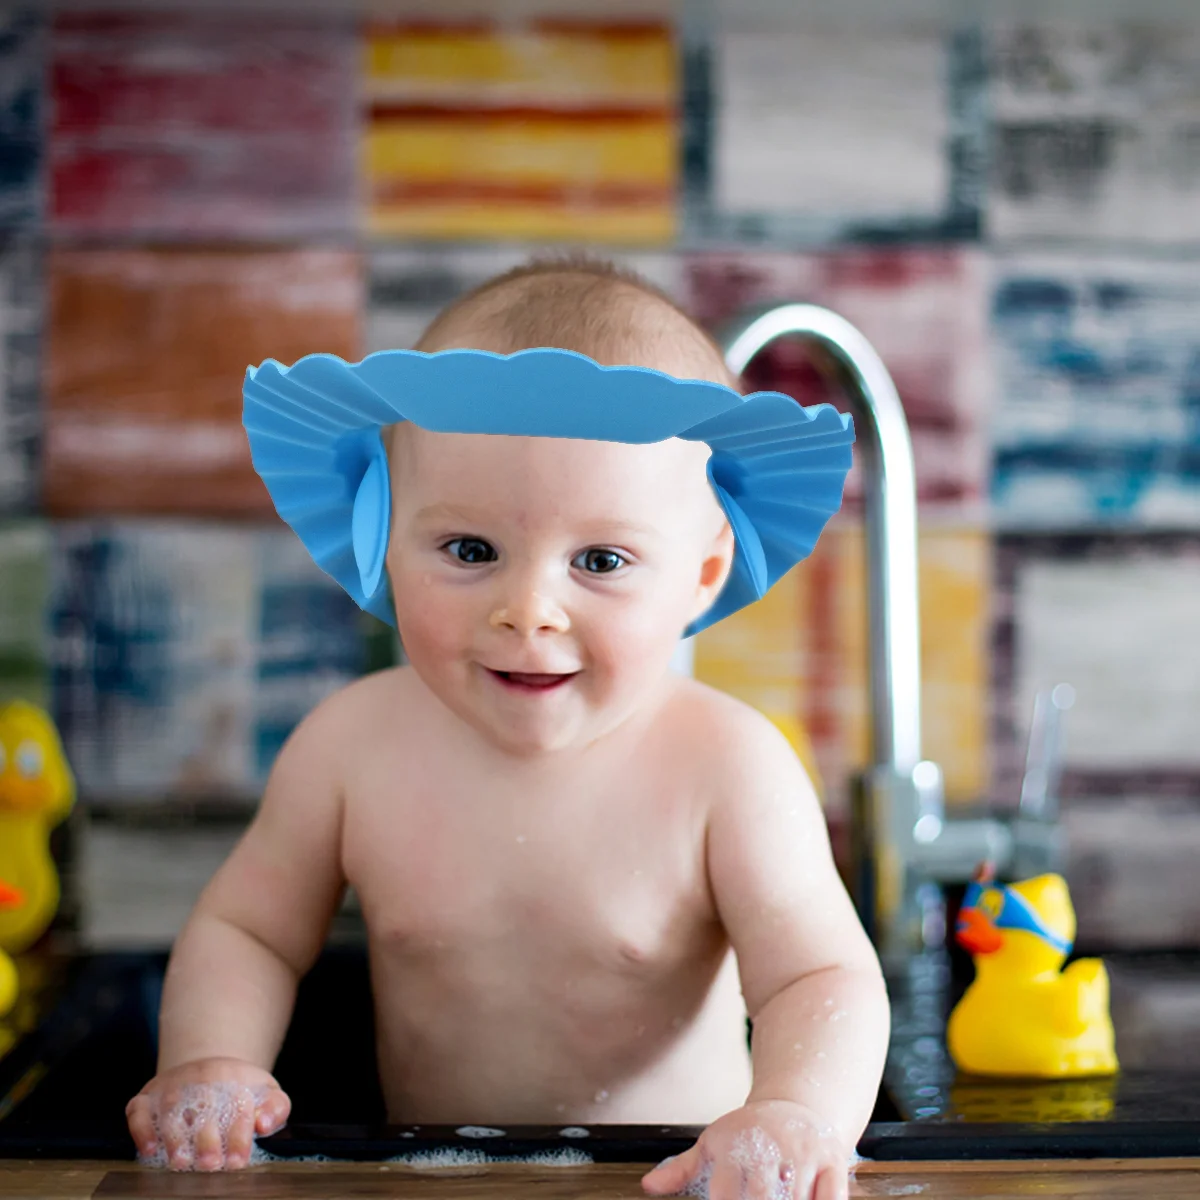 

Регулируемая мягкая шапочка для защиты ребенка от шампуня и душа, шапочка для мытья волос с подушечками для защиты ушей